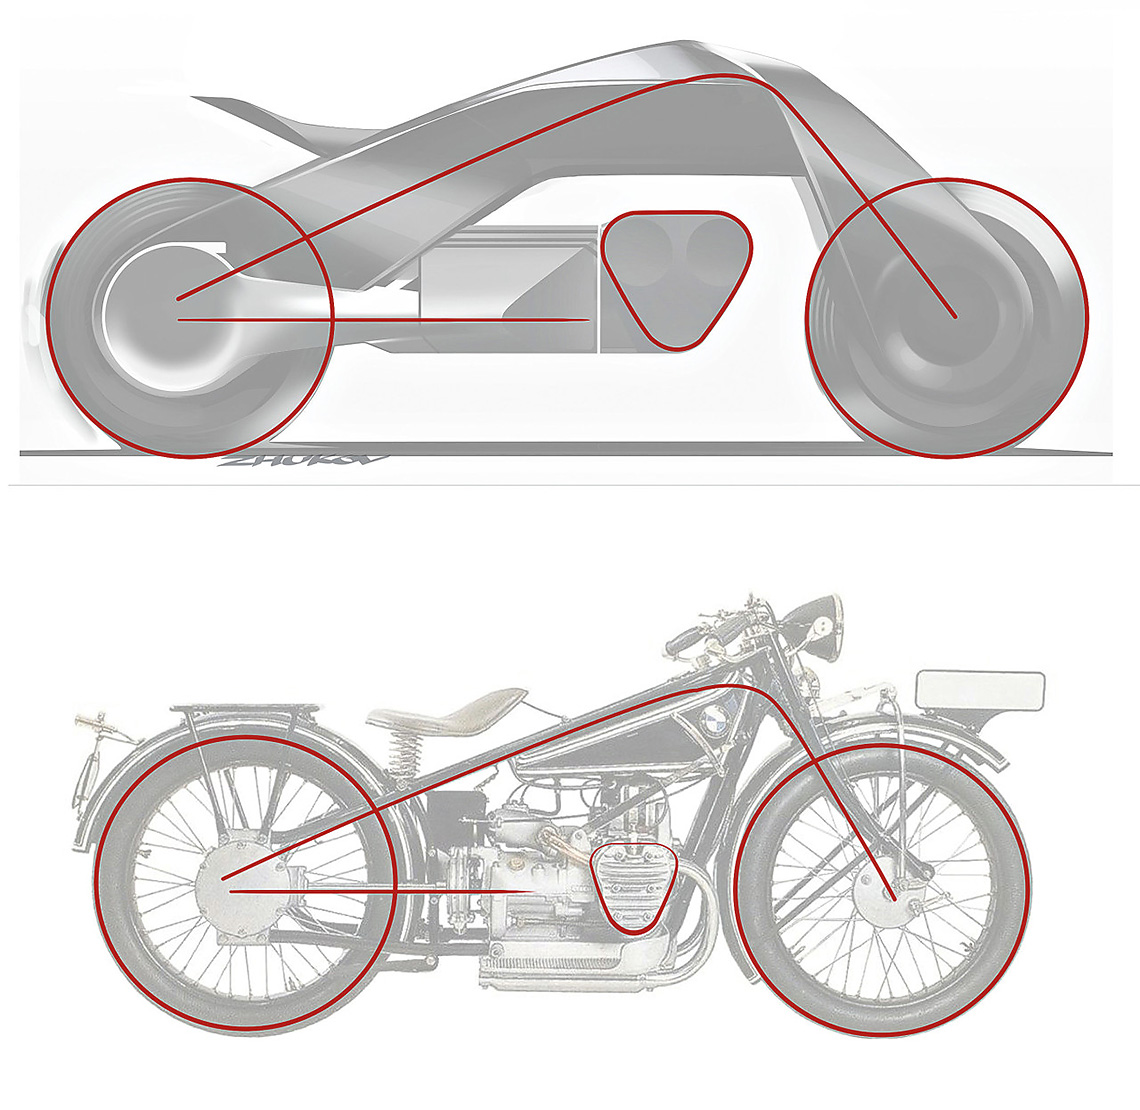 Stilisticamente BMW Motorrad Vision Next 100 ricorda vagamente la primissima motocicletta del marchio: la BMW R23, rilasciata nel 1923 (era basata sulla moto dell'azienda britannica Douglas).